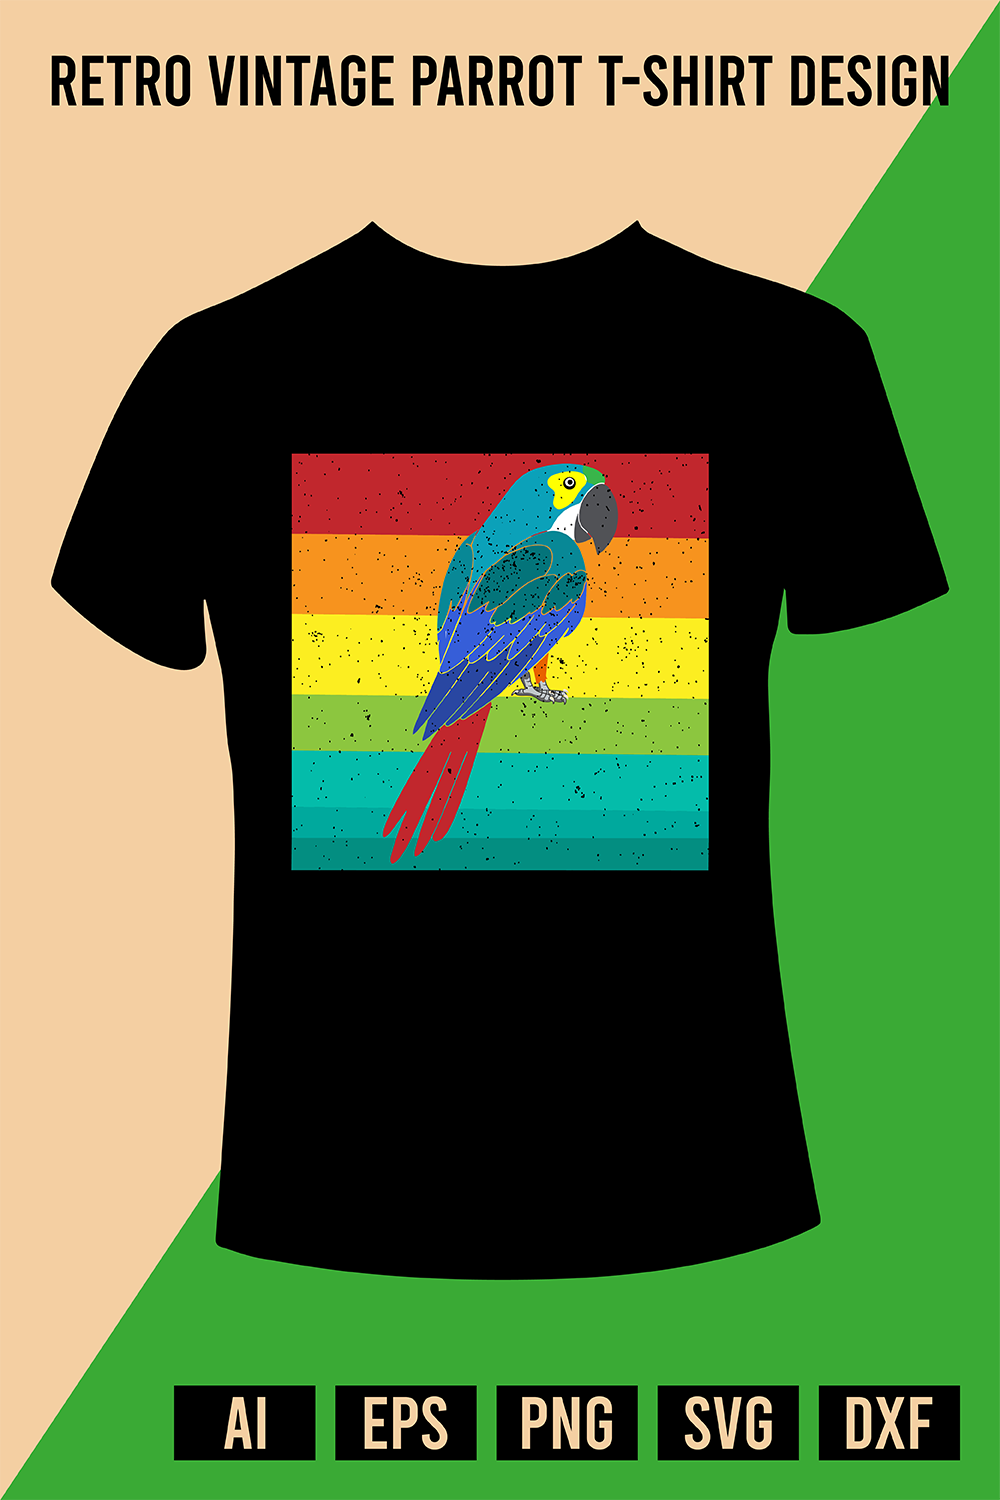 Retro Vintage Parrot T-Shirt Design pinterest preview image.